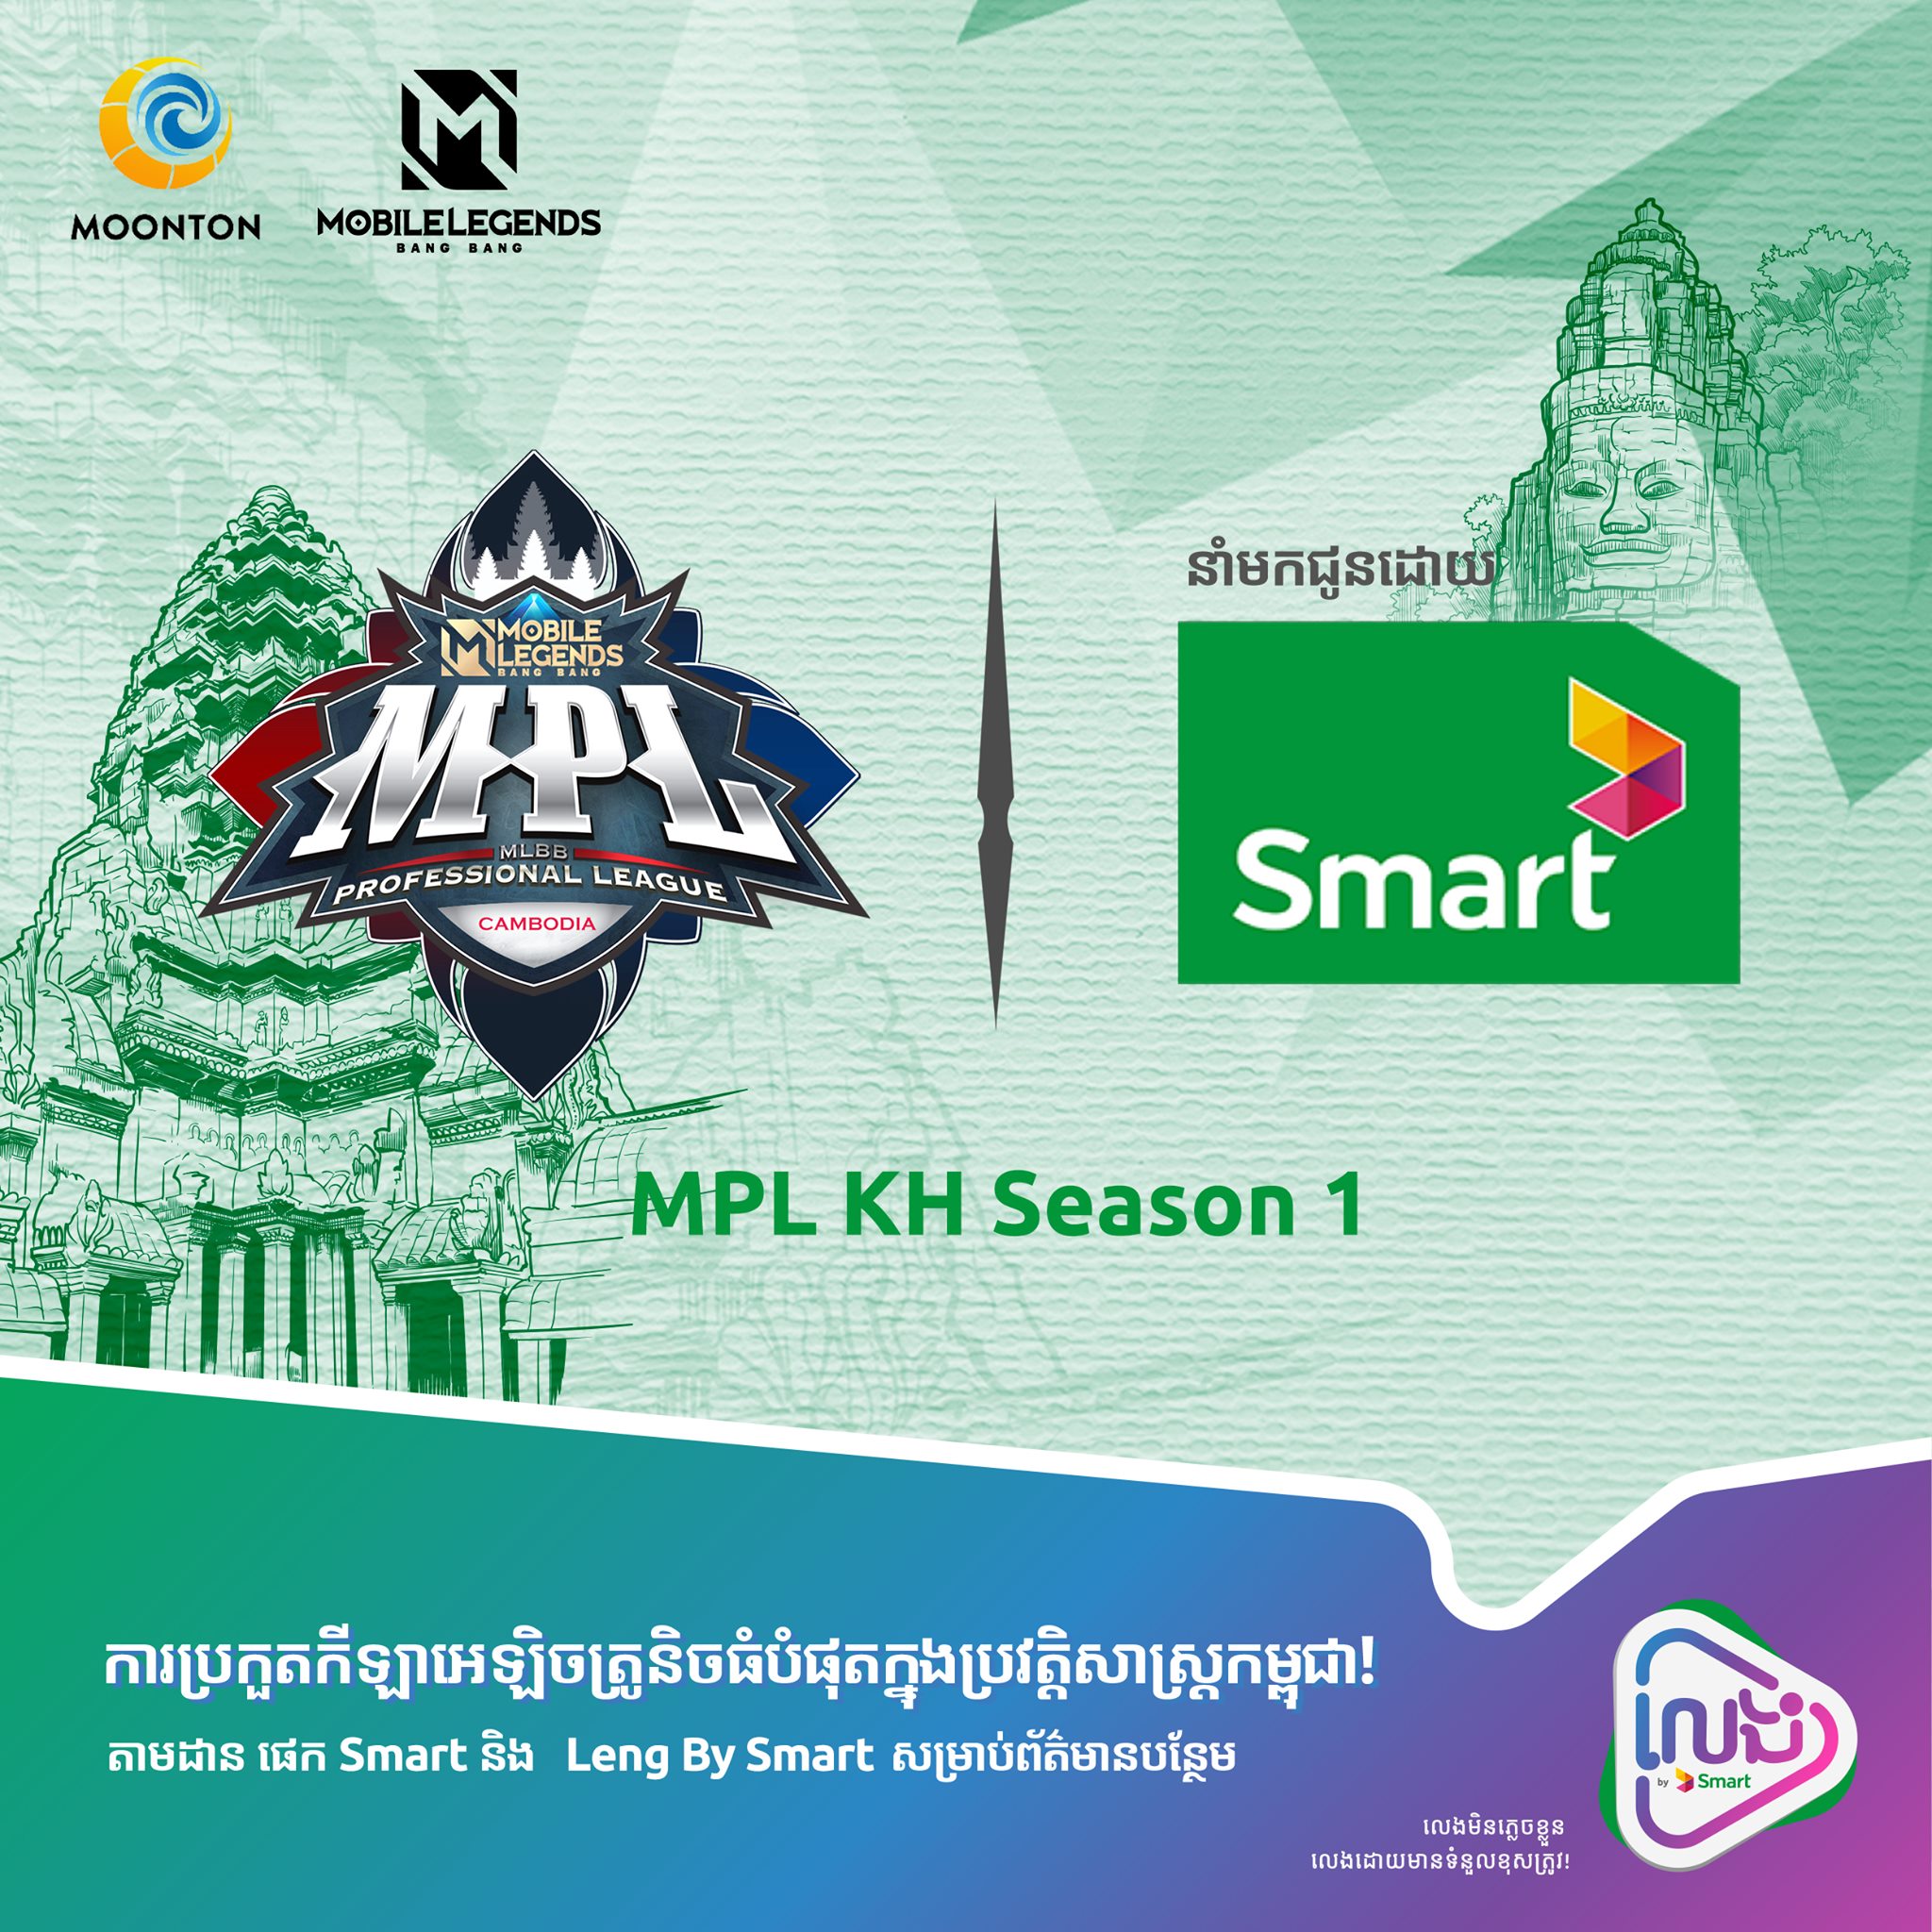 MPL KH Season 1